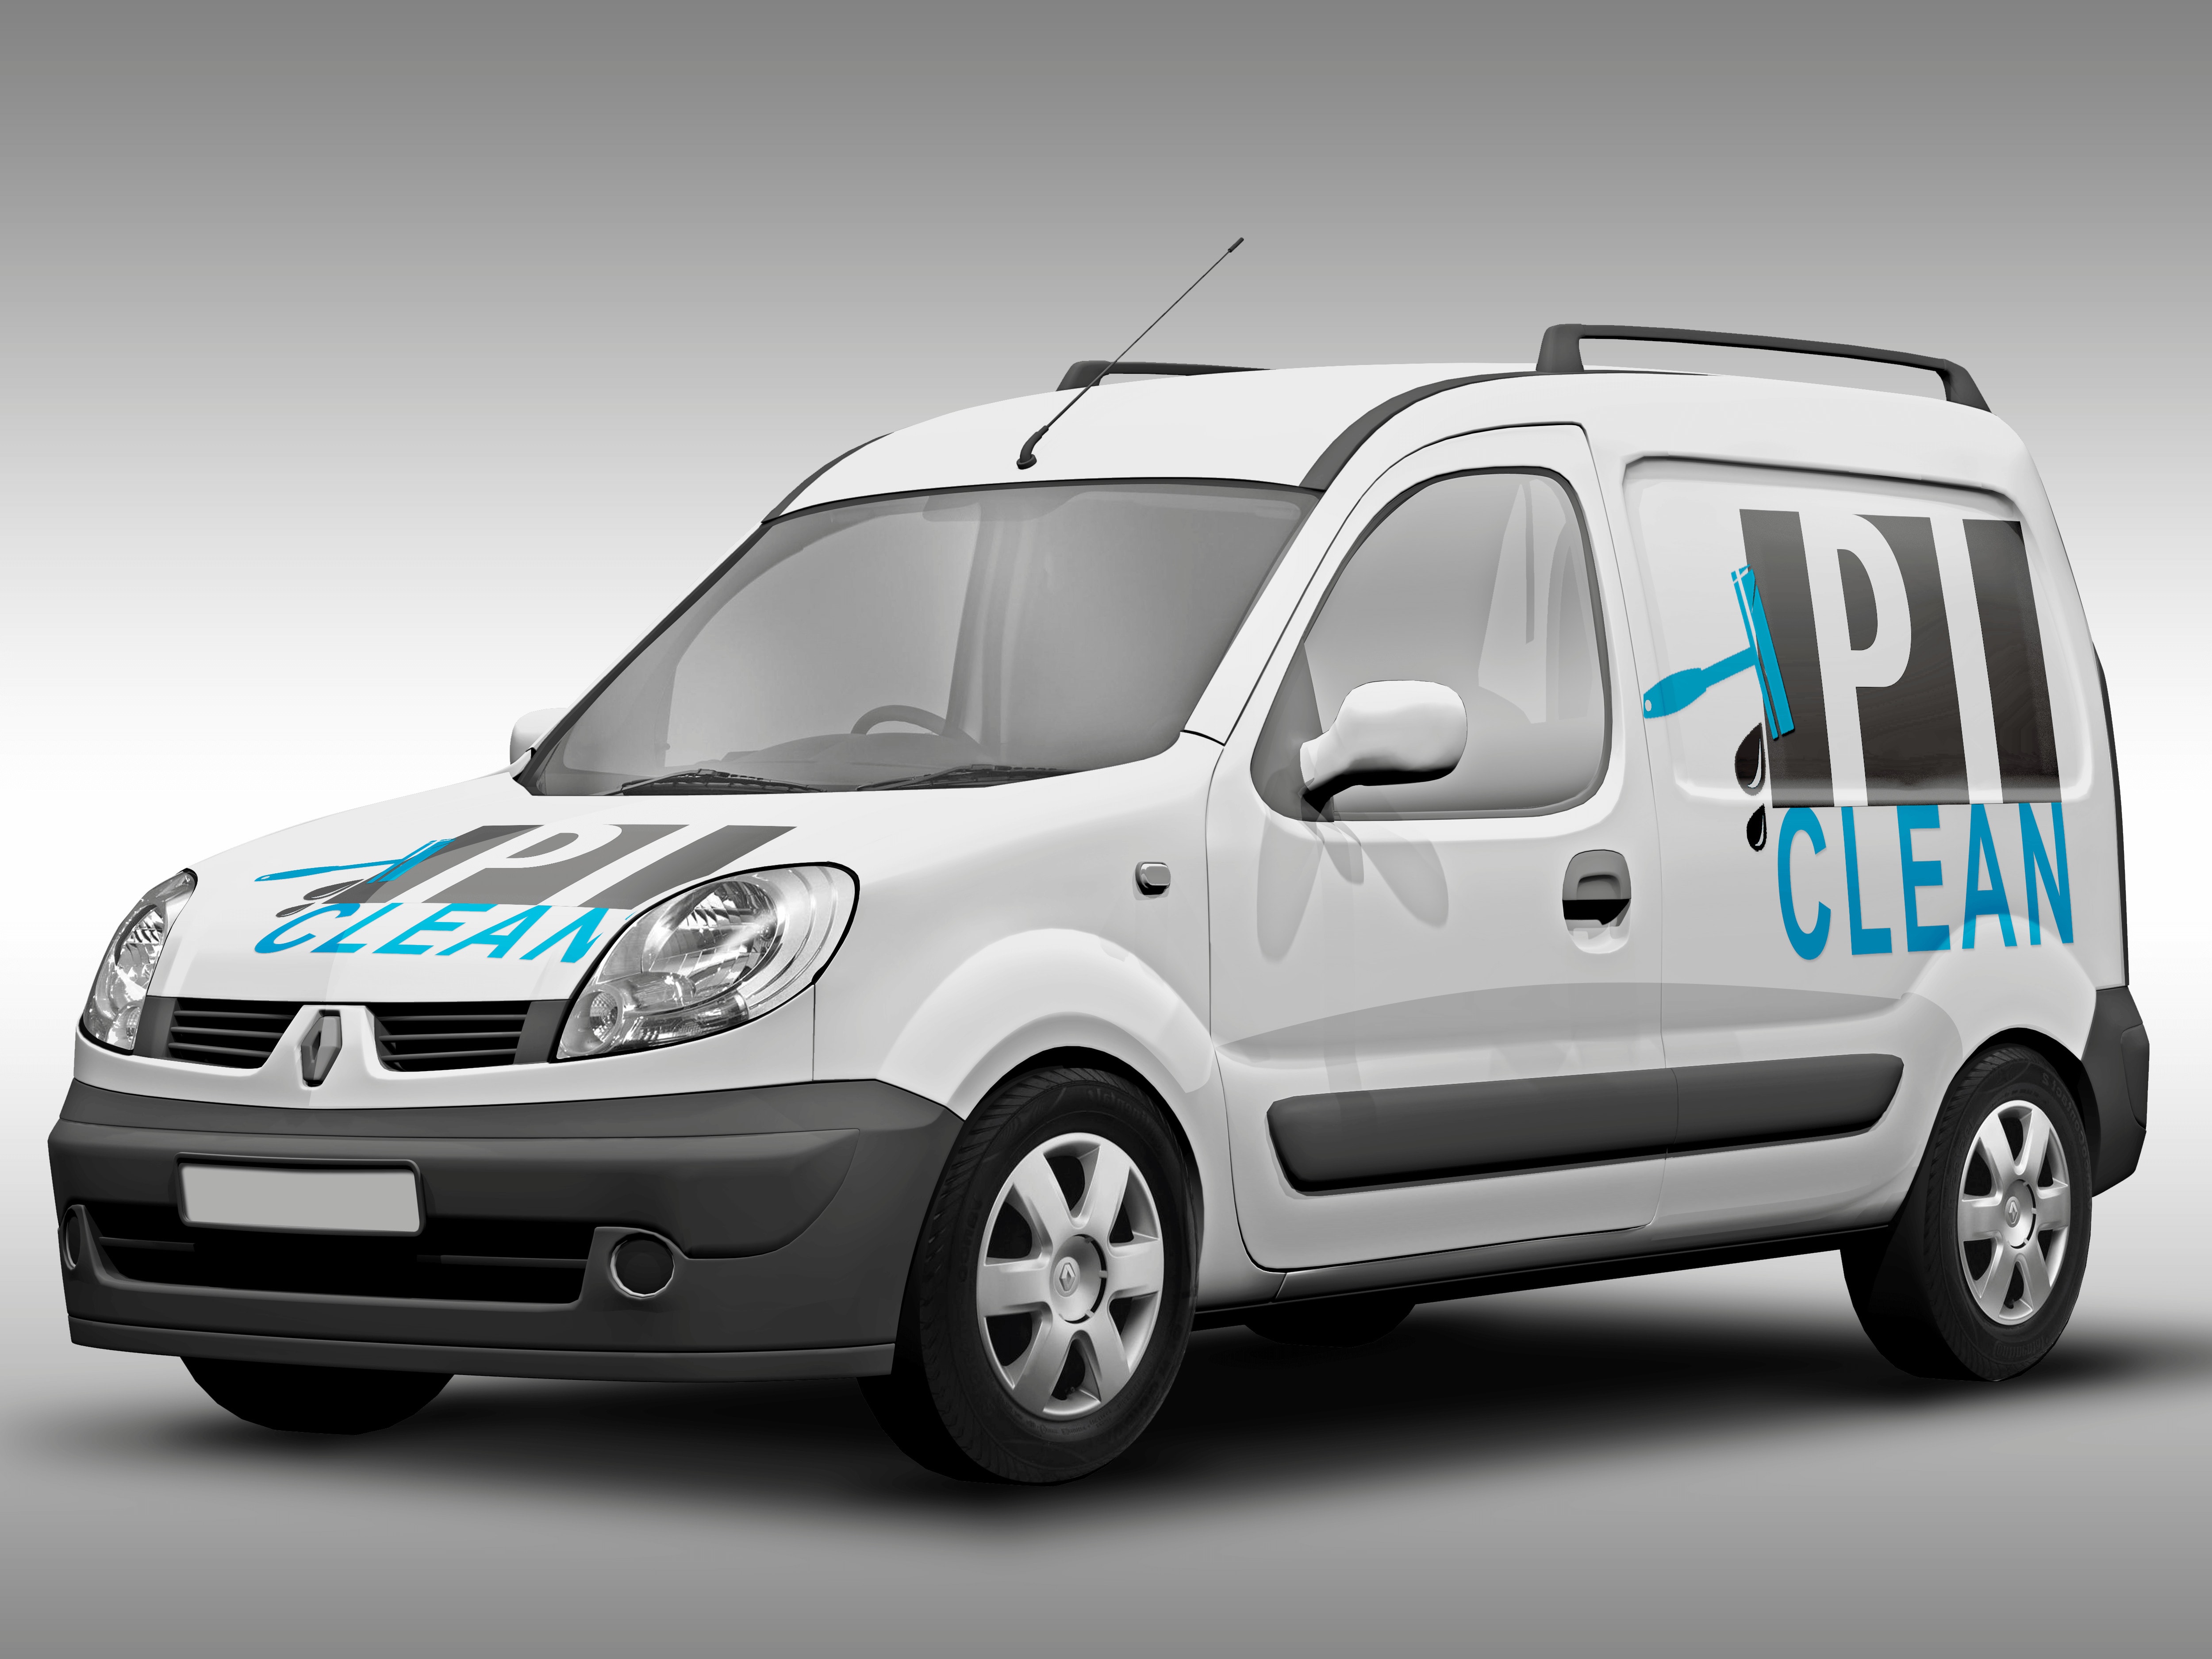 PI-Clean-logo-autobeklebung-pi-clean-kirchheim-teck-putzen-unternehmens-reinigung-qualitaet-liebespixel-logo